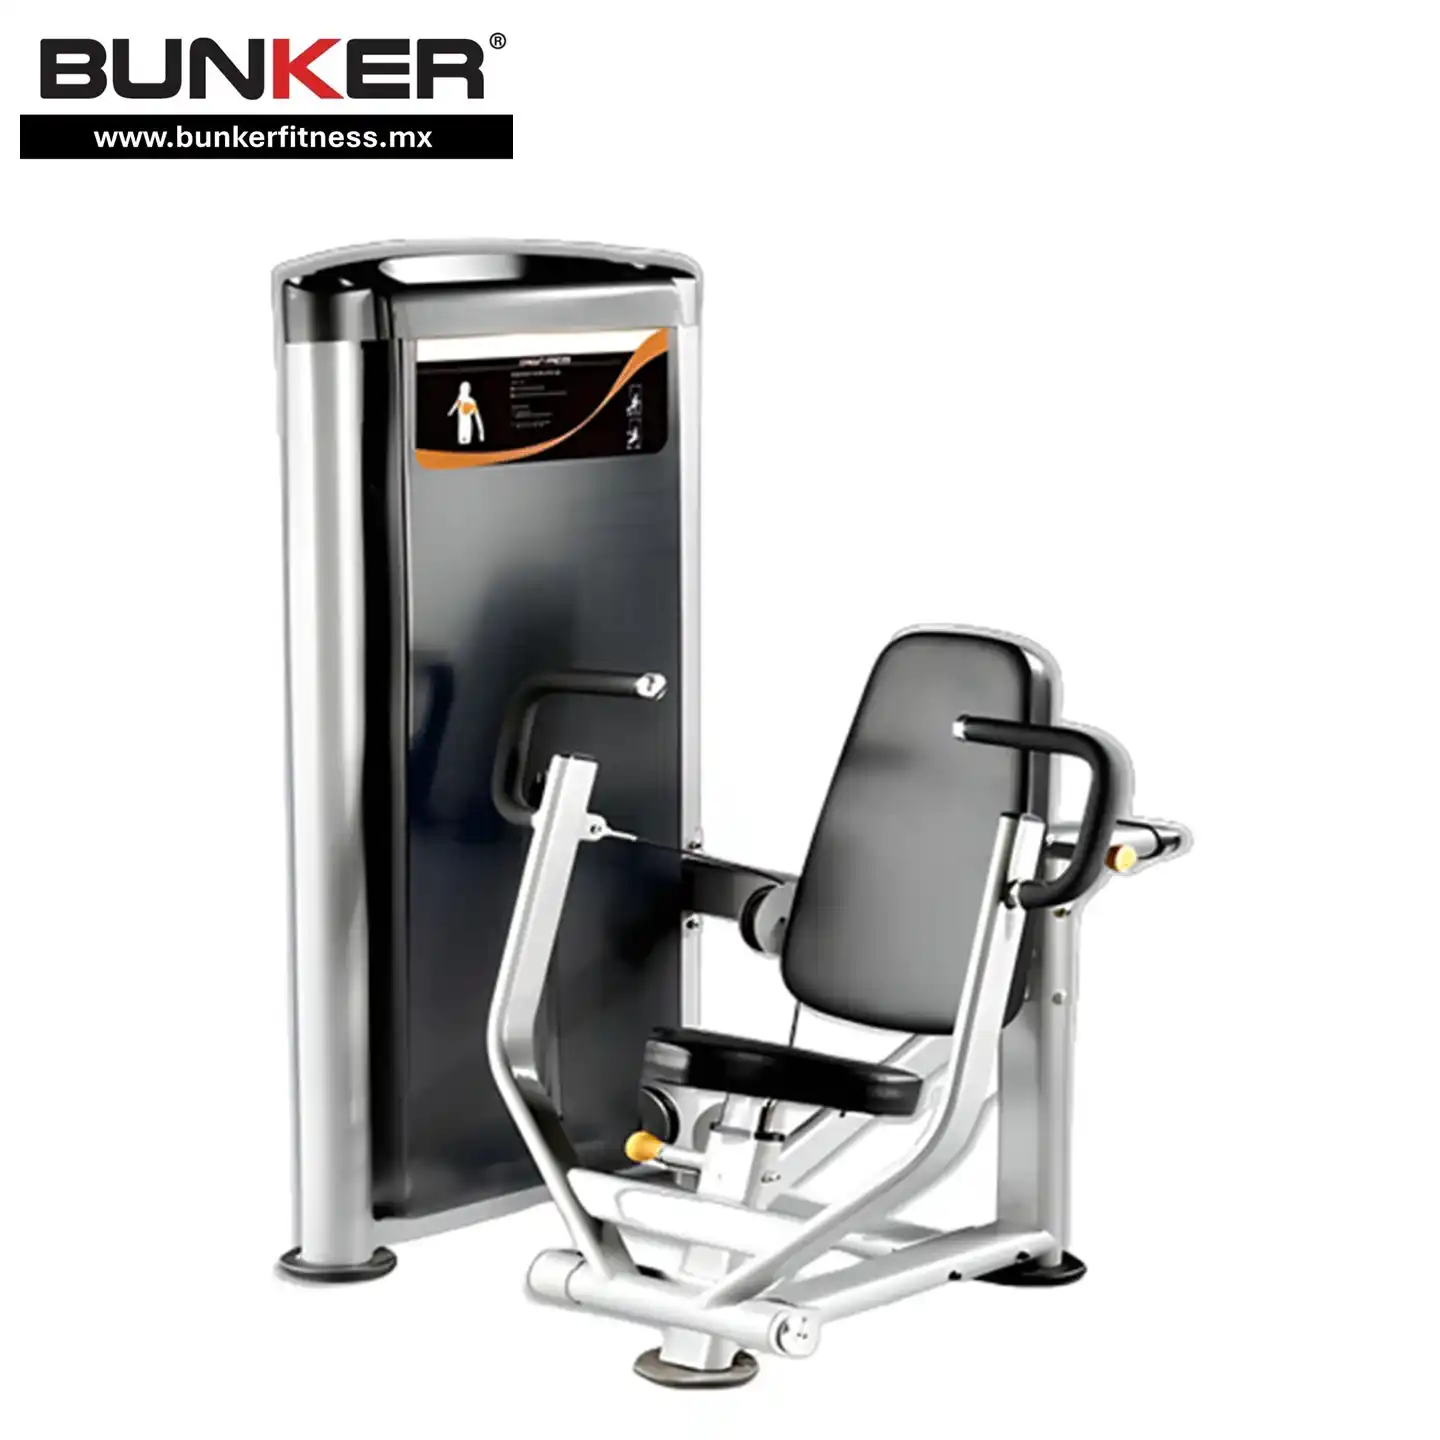 hs chest press con peso integrado  para ejercicio y gimnasio en casa bunker gym bunker fitness